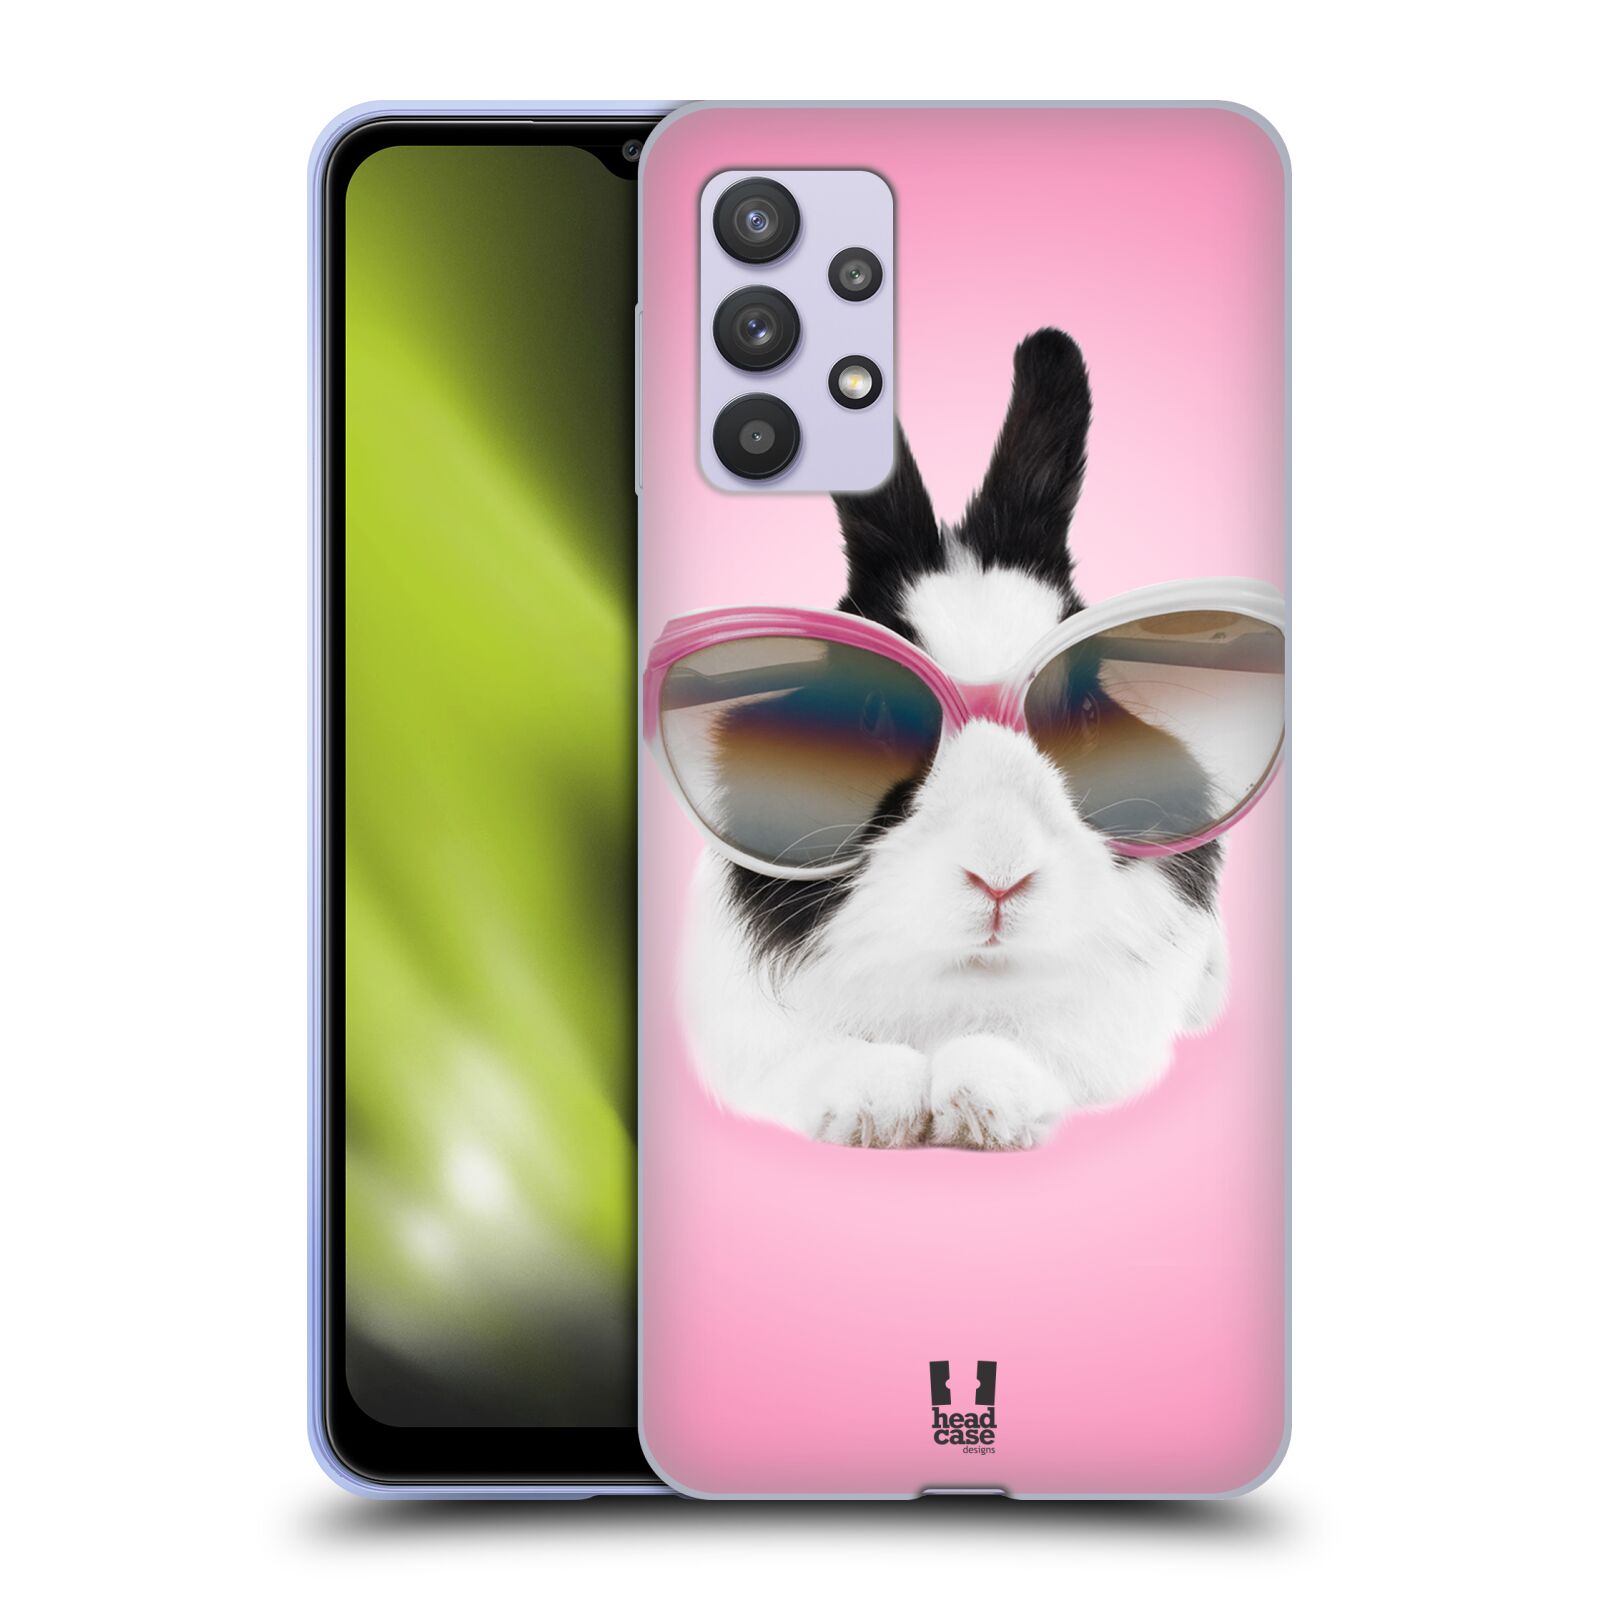 Plastový obal HEAD CASE na mobil Samsung Galaxy A32 5G vzor Legrační zvířátka roztomilý králíček s brýlemi růžová